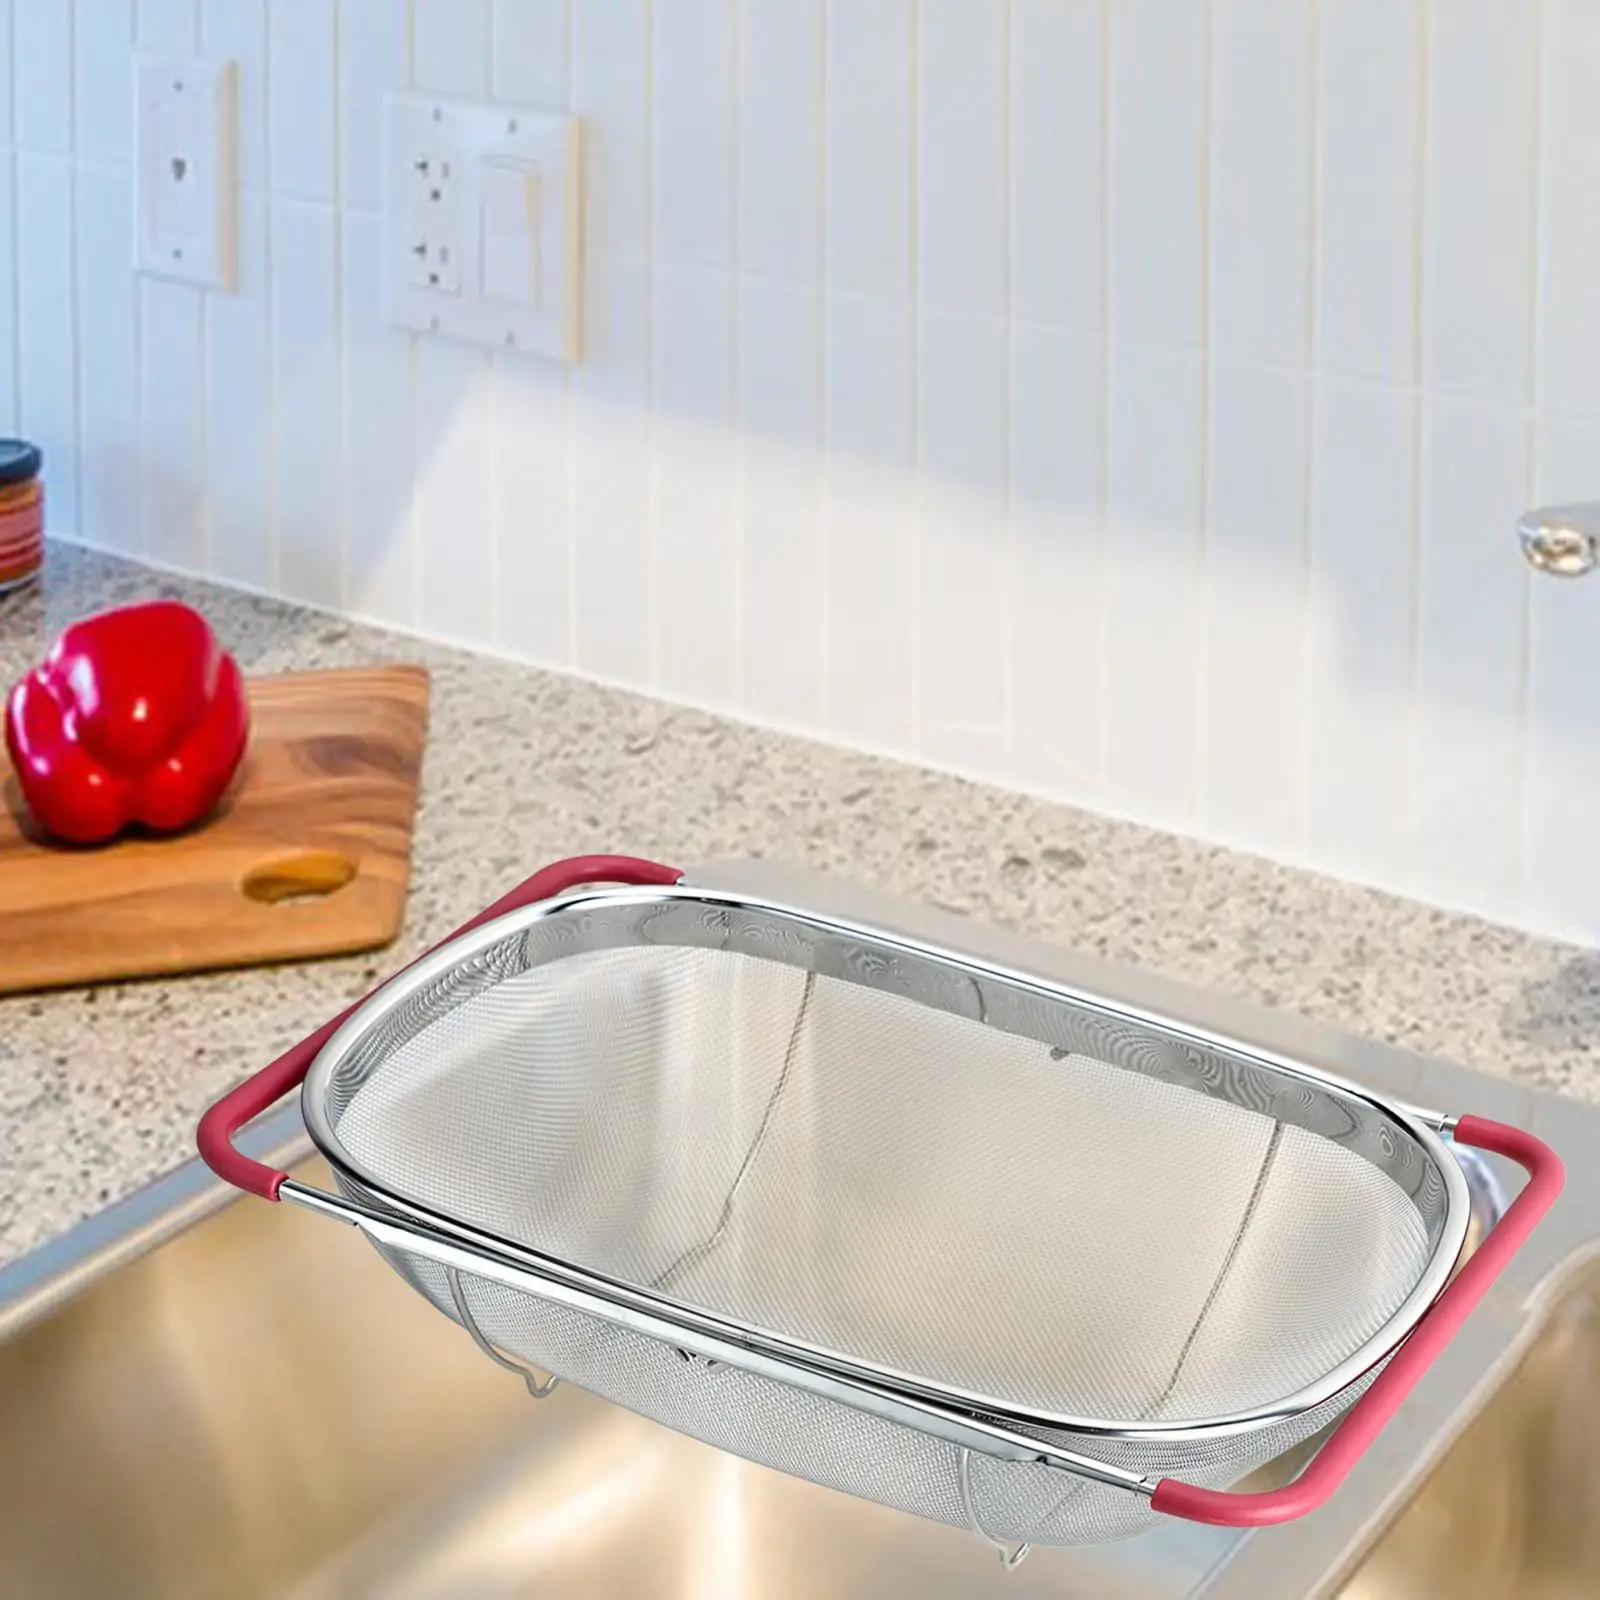 over Sink Colander Basket Extendable Expandable Sink Washing Basket Fruits Vegetables Drain Basket Home Kitchen Accessory